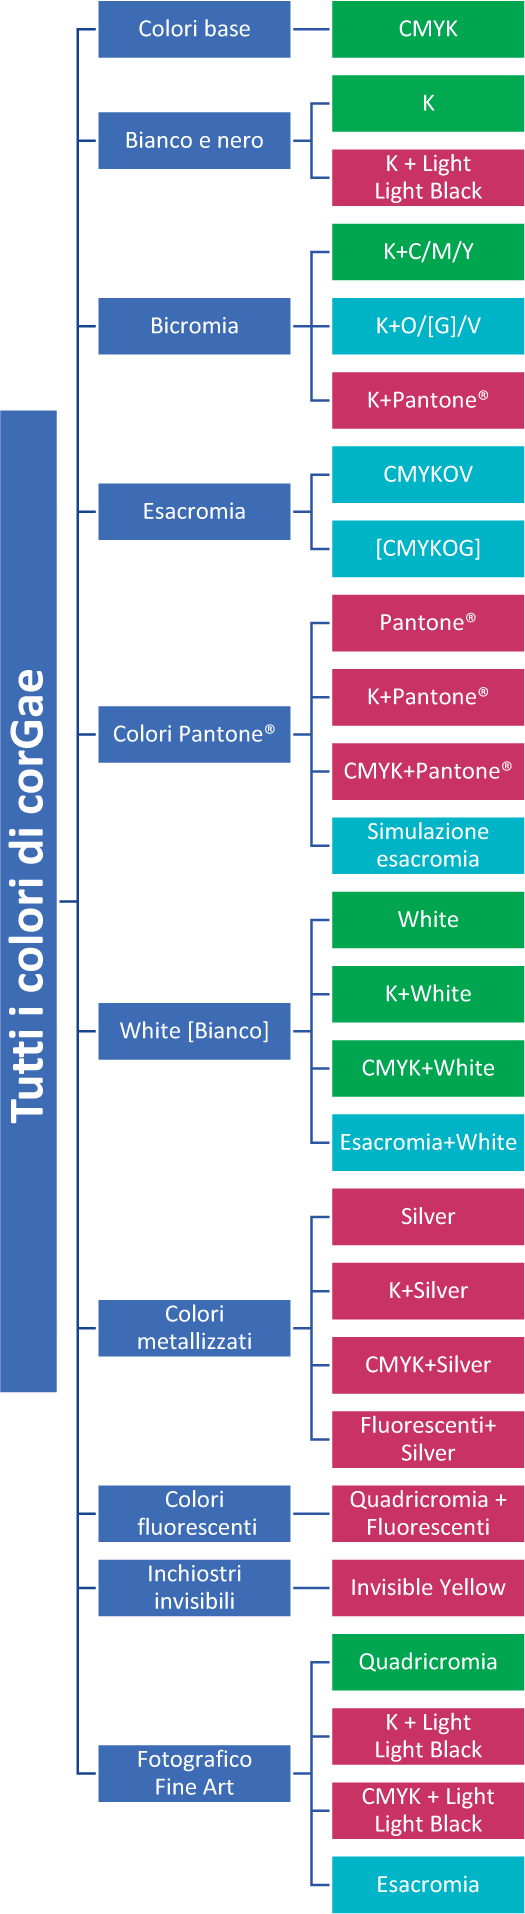 colori di stampa corGae - stampa digitale HP Indigo